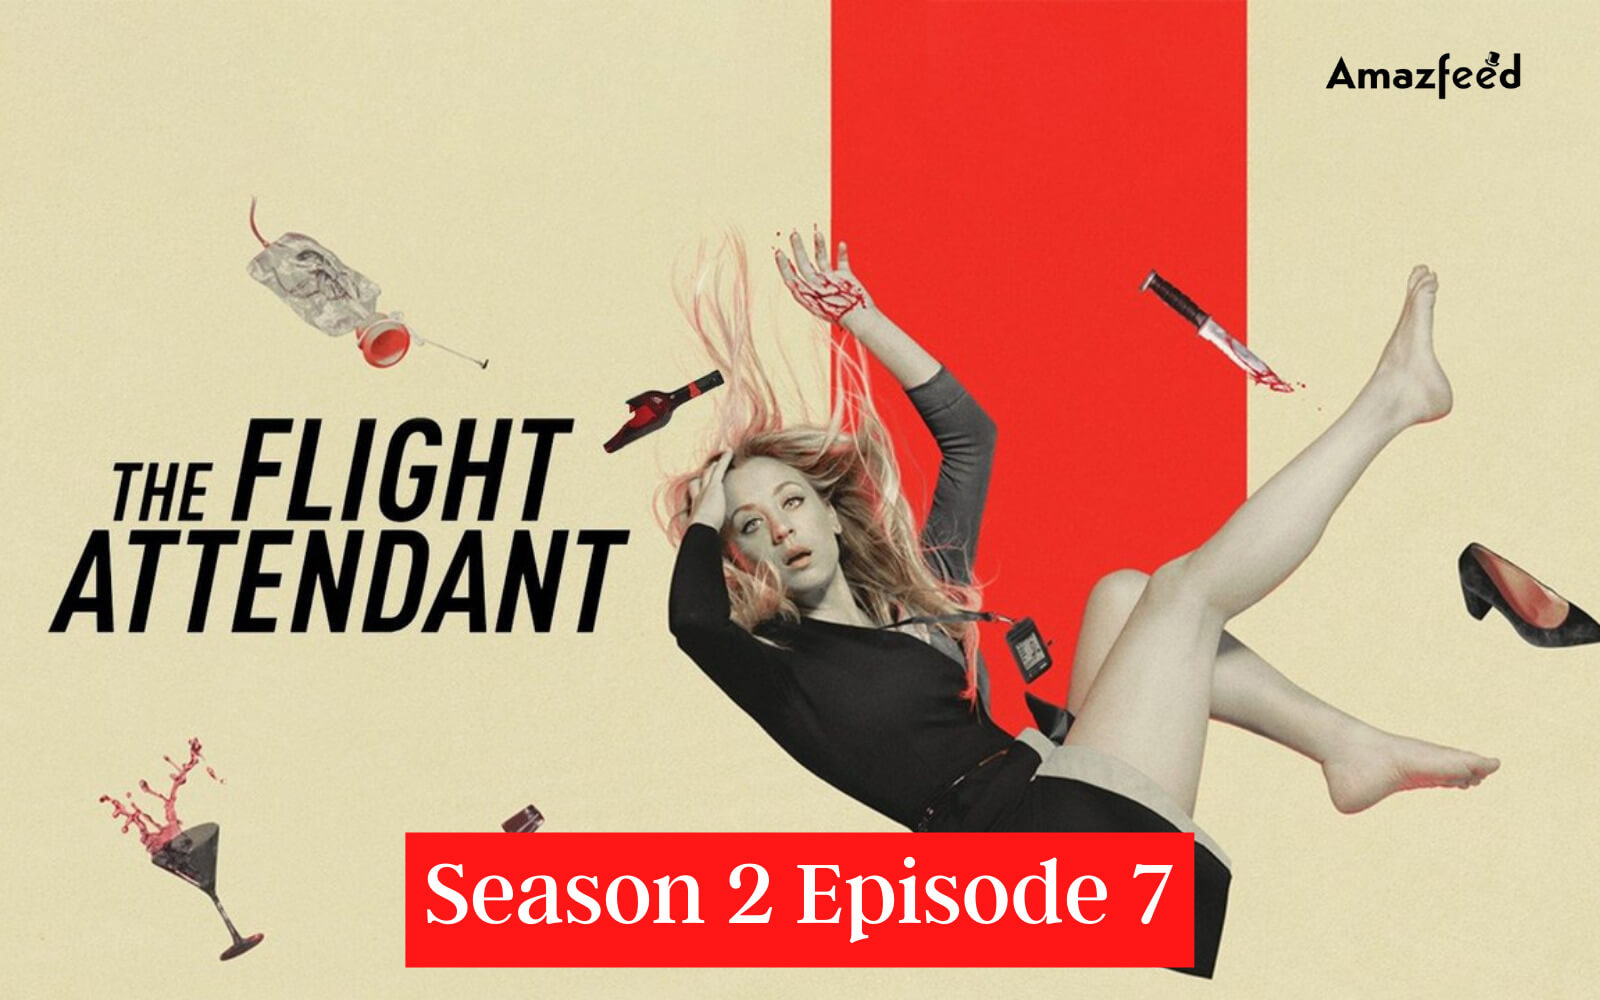 The Flight Attendant Season 2 Episode 7 Release date